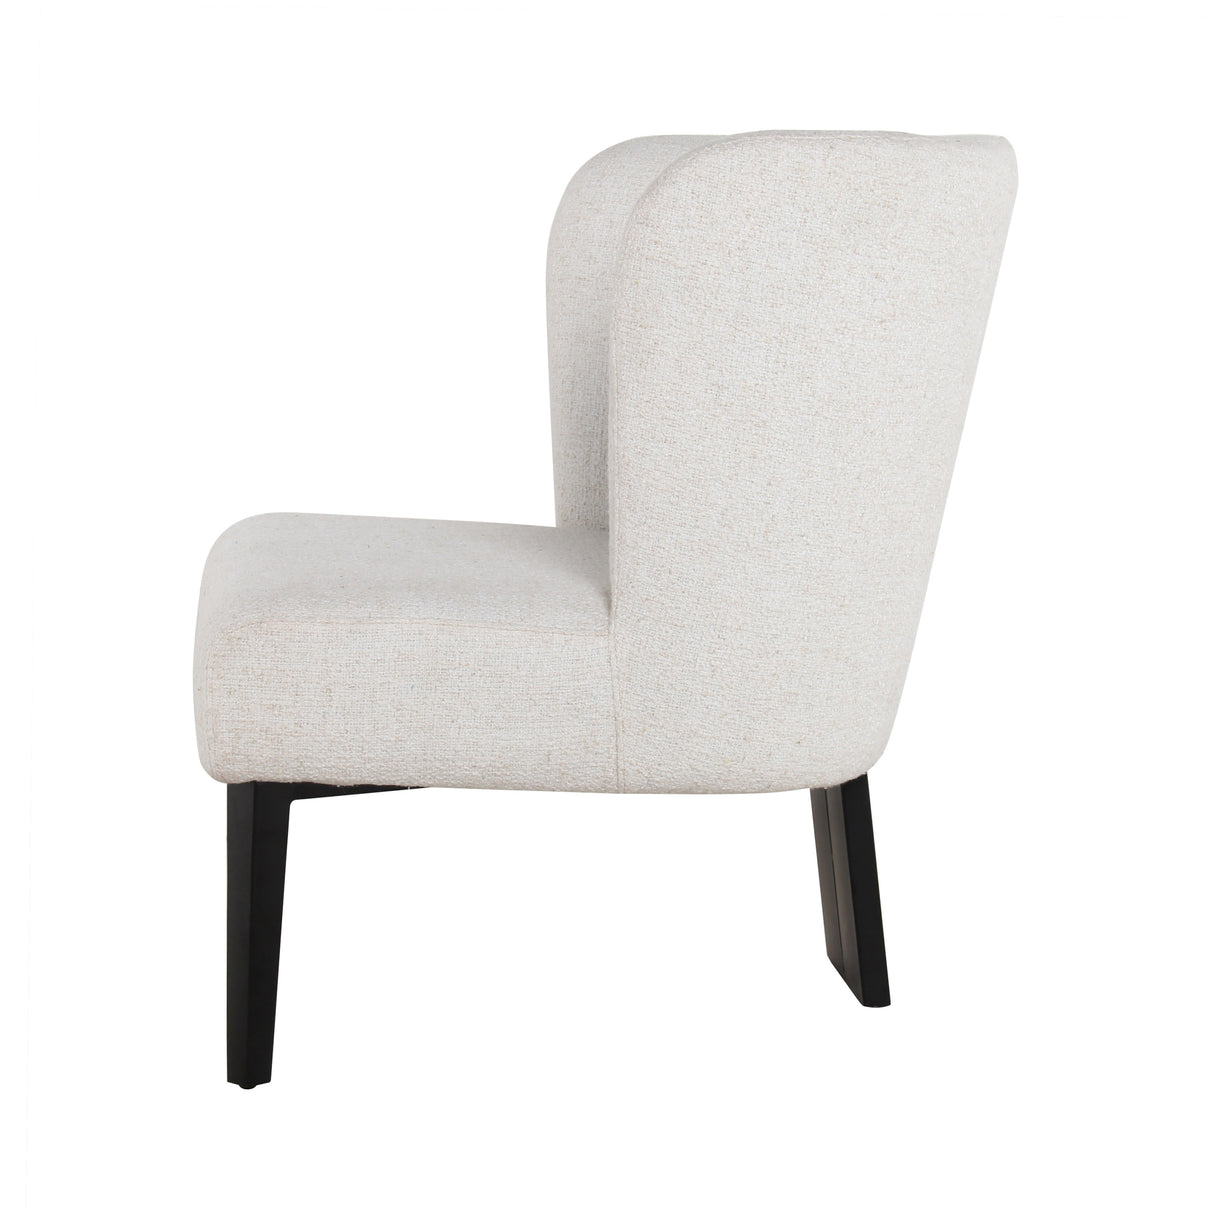 Divani Casa Ladean Modern White Accent Chair - Home Elegance USA